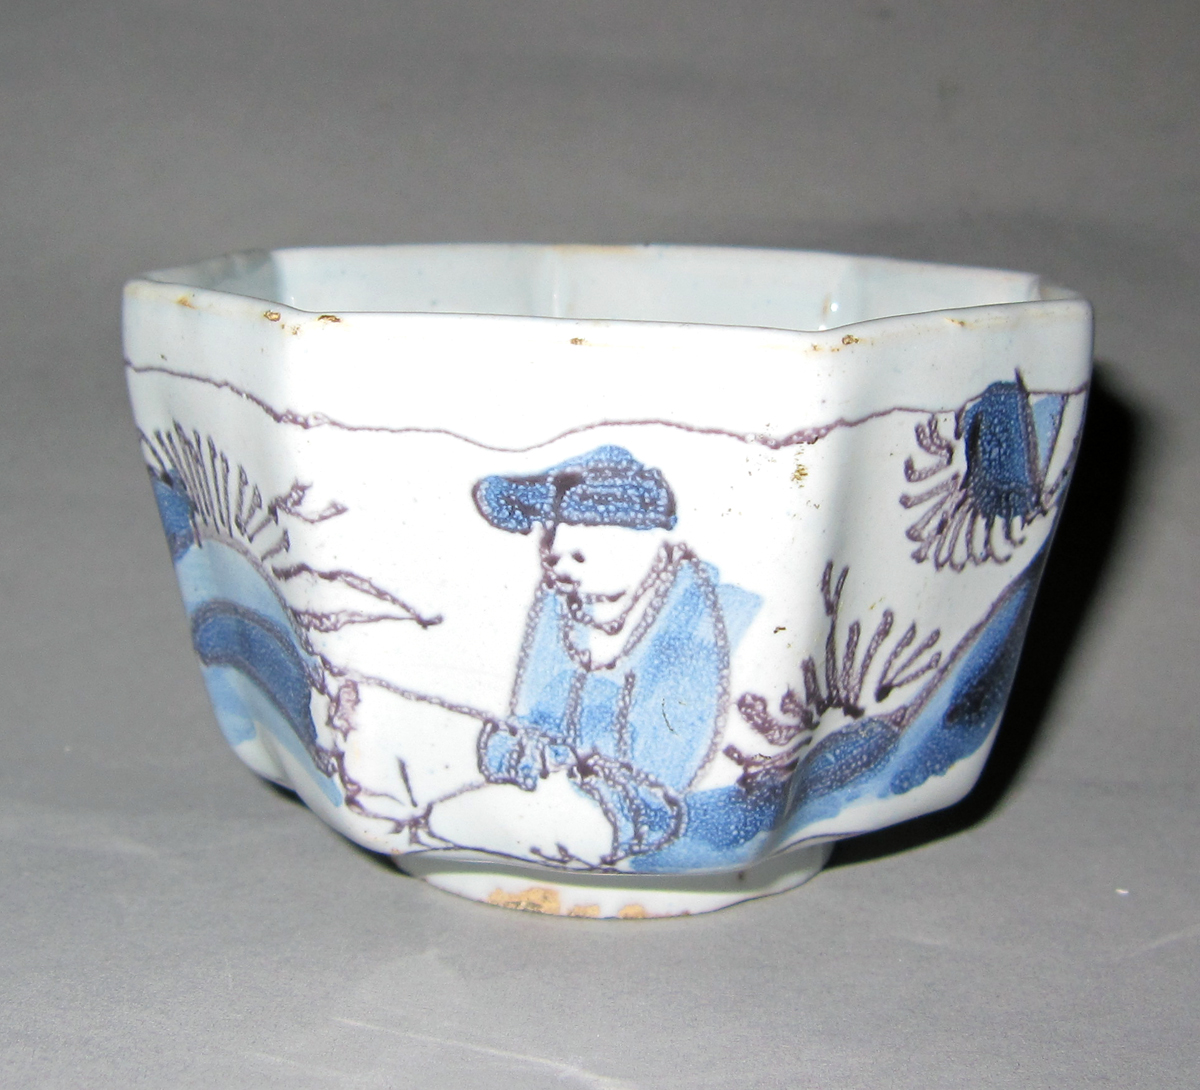 2003.0022.011.002 Delft teabowl